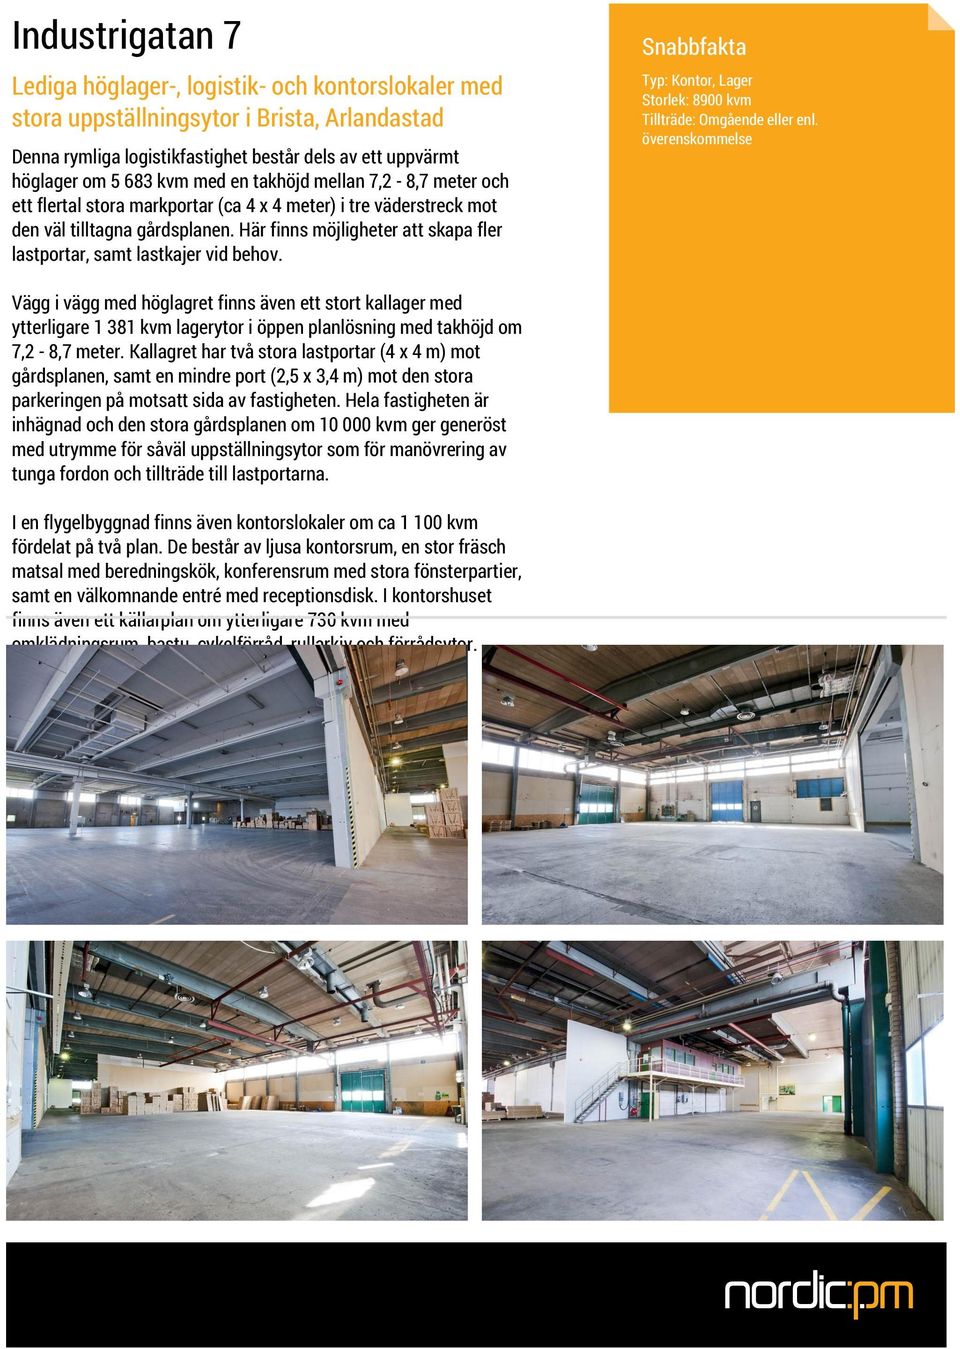 Vägg i vägg med höglagret finns även ett stort kallager med ytterligare 1 381 kvm lagerytor i öppen planlösning med takhöjd om 7,2-8,7 meter.